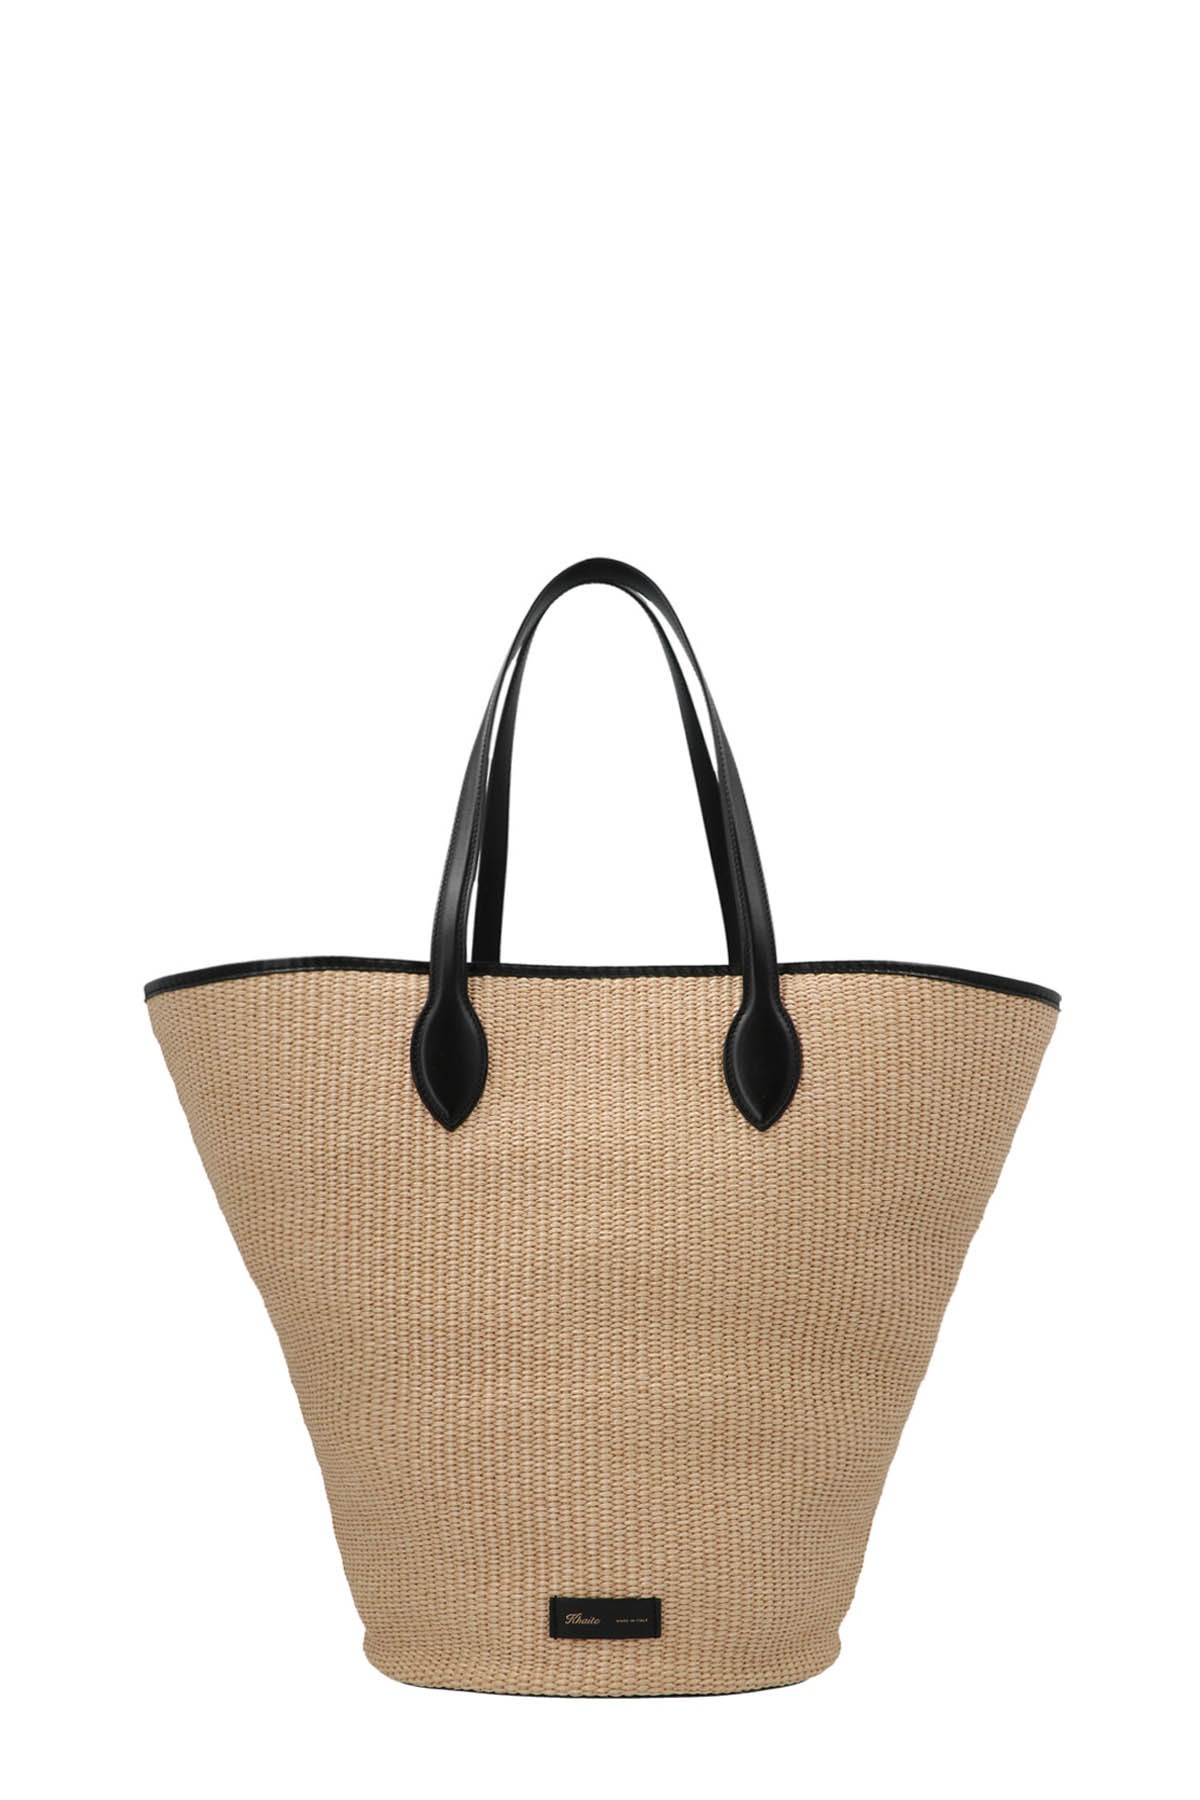 KHAITE ‘Osa Medium’ Shopping Bag